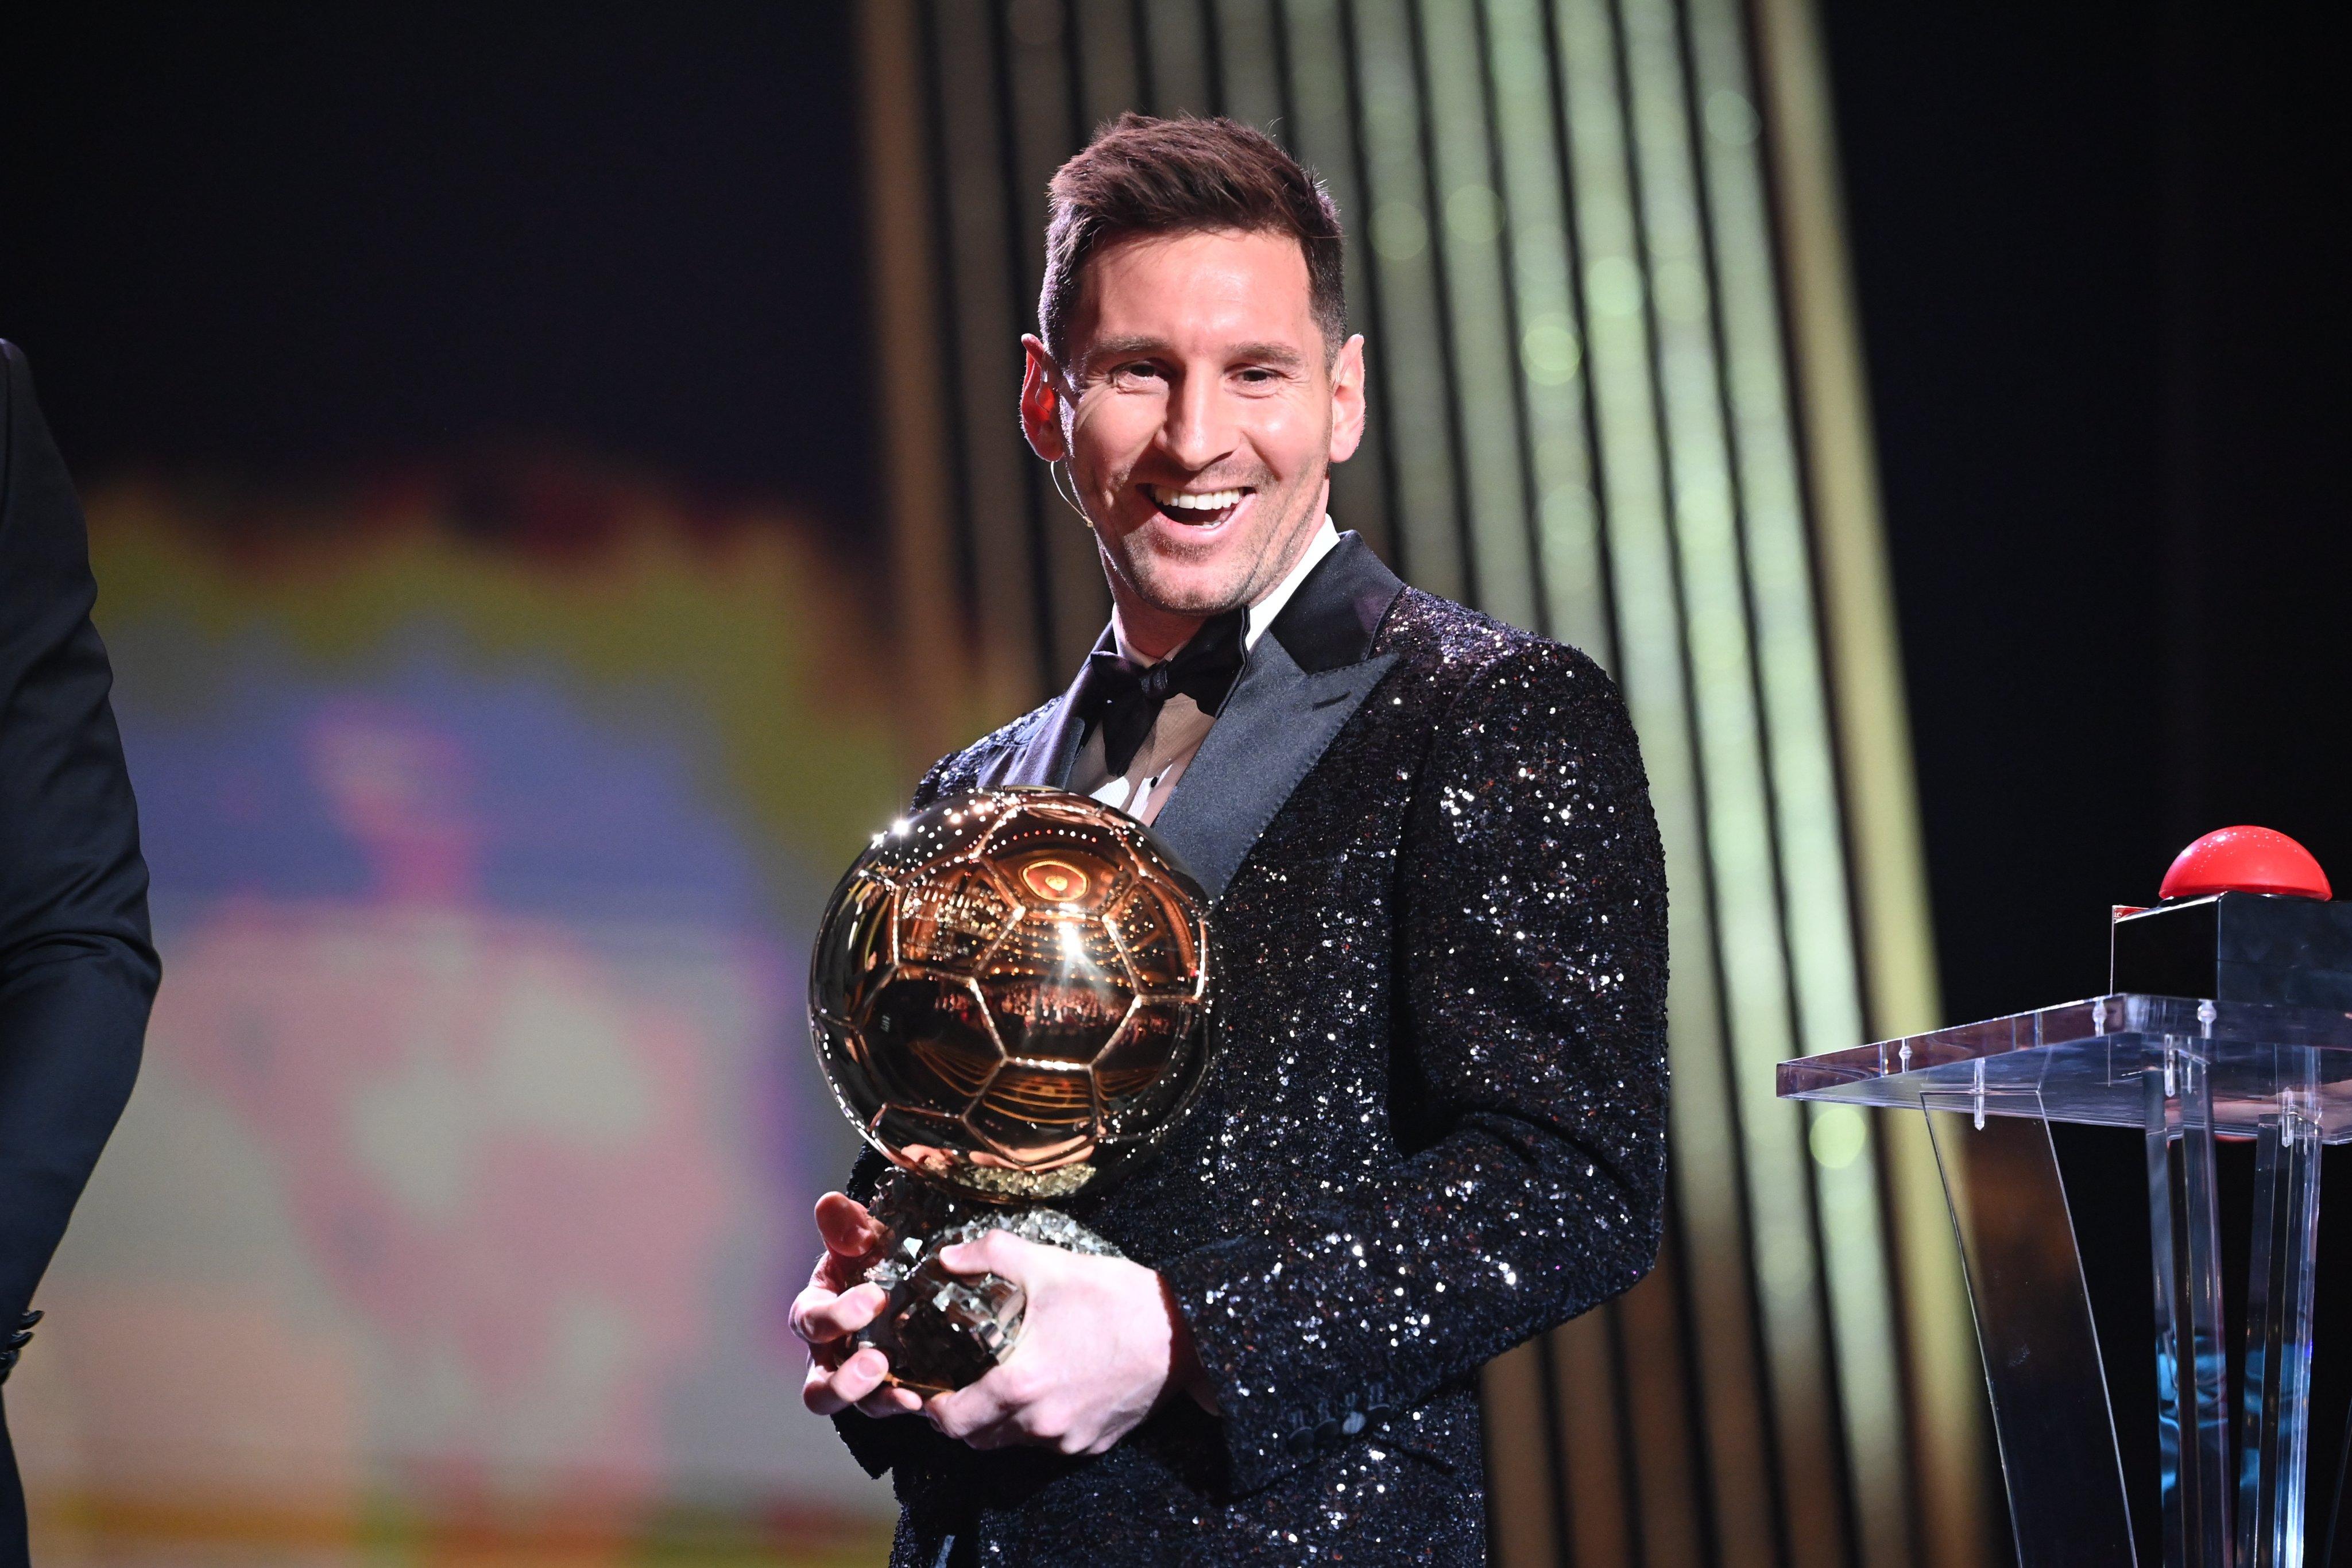 Quả bóng vàng trường kỷ đã thuộc về Messi - người ghi bàn và giúp đội tuyển Argentina lên ngôi vô địch. Hãy cùng chiêm ngưỡng hình ảnh anh ấy nhận cúp và tỏa sáng trong ngày huy hoàng đó.